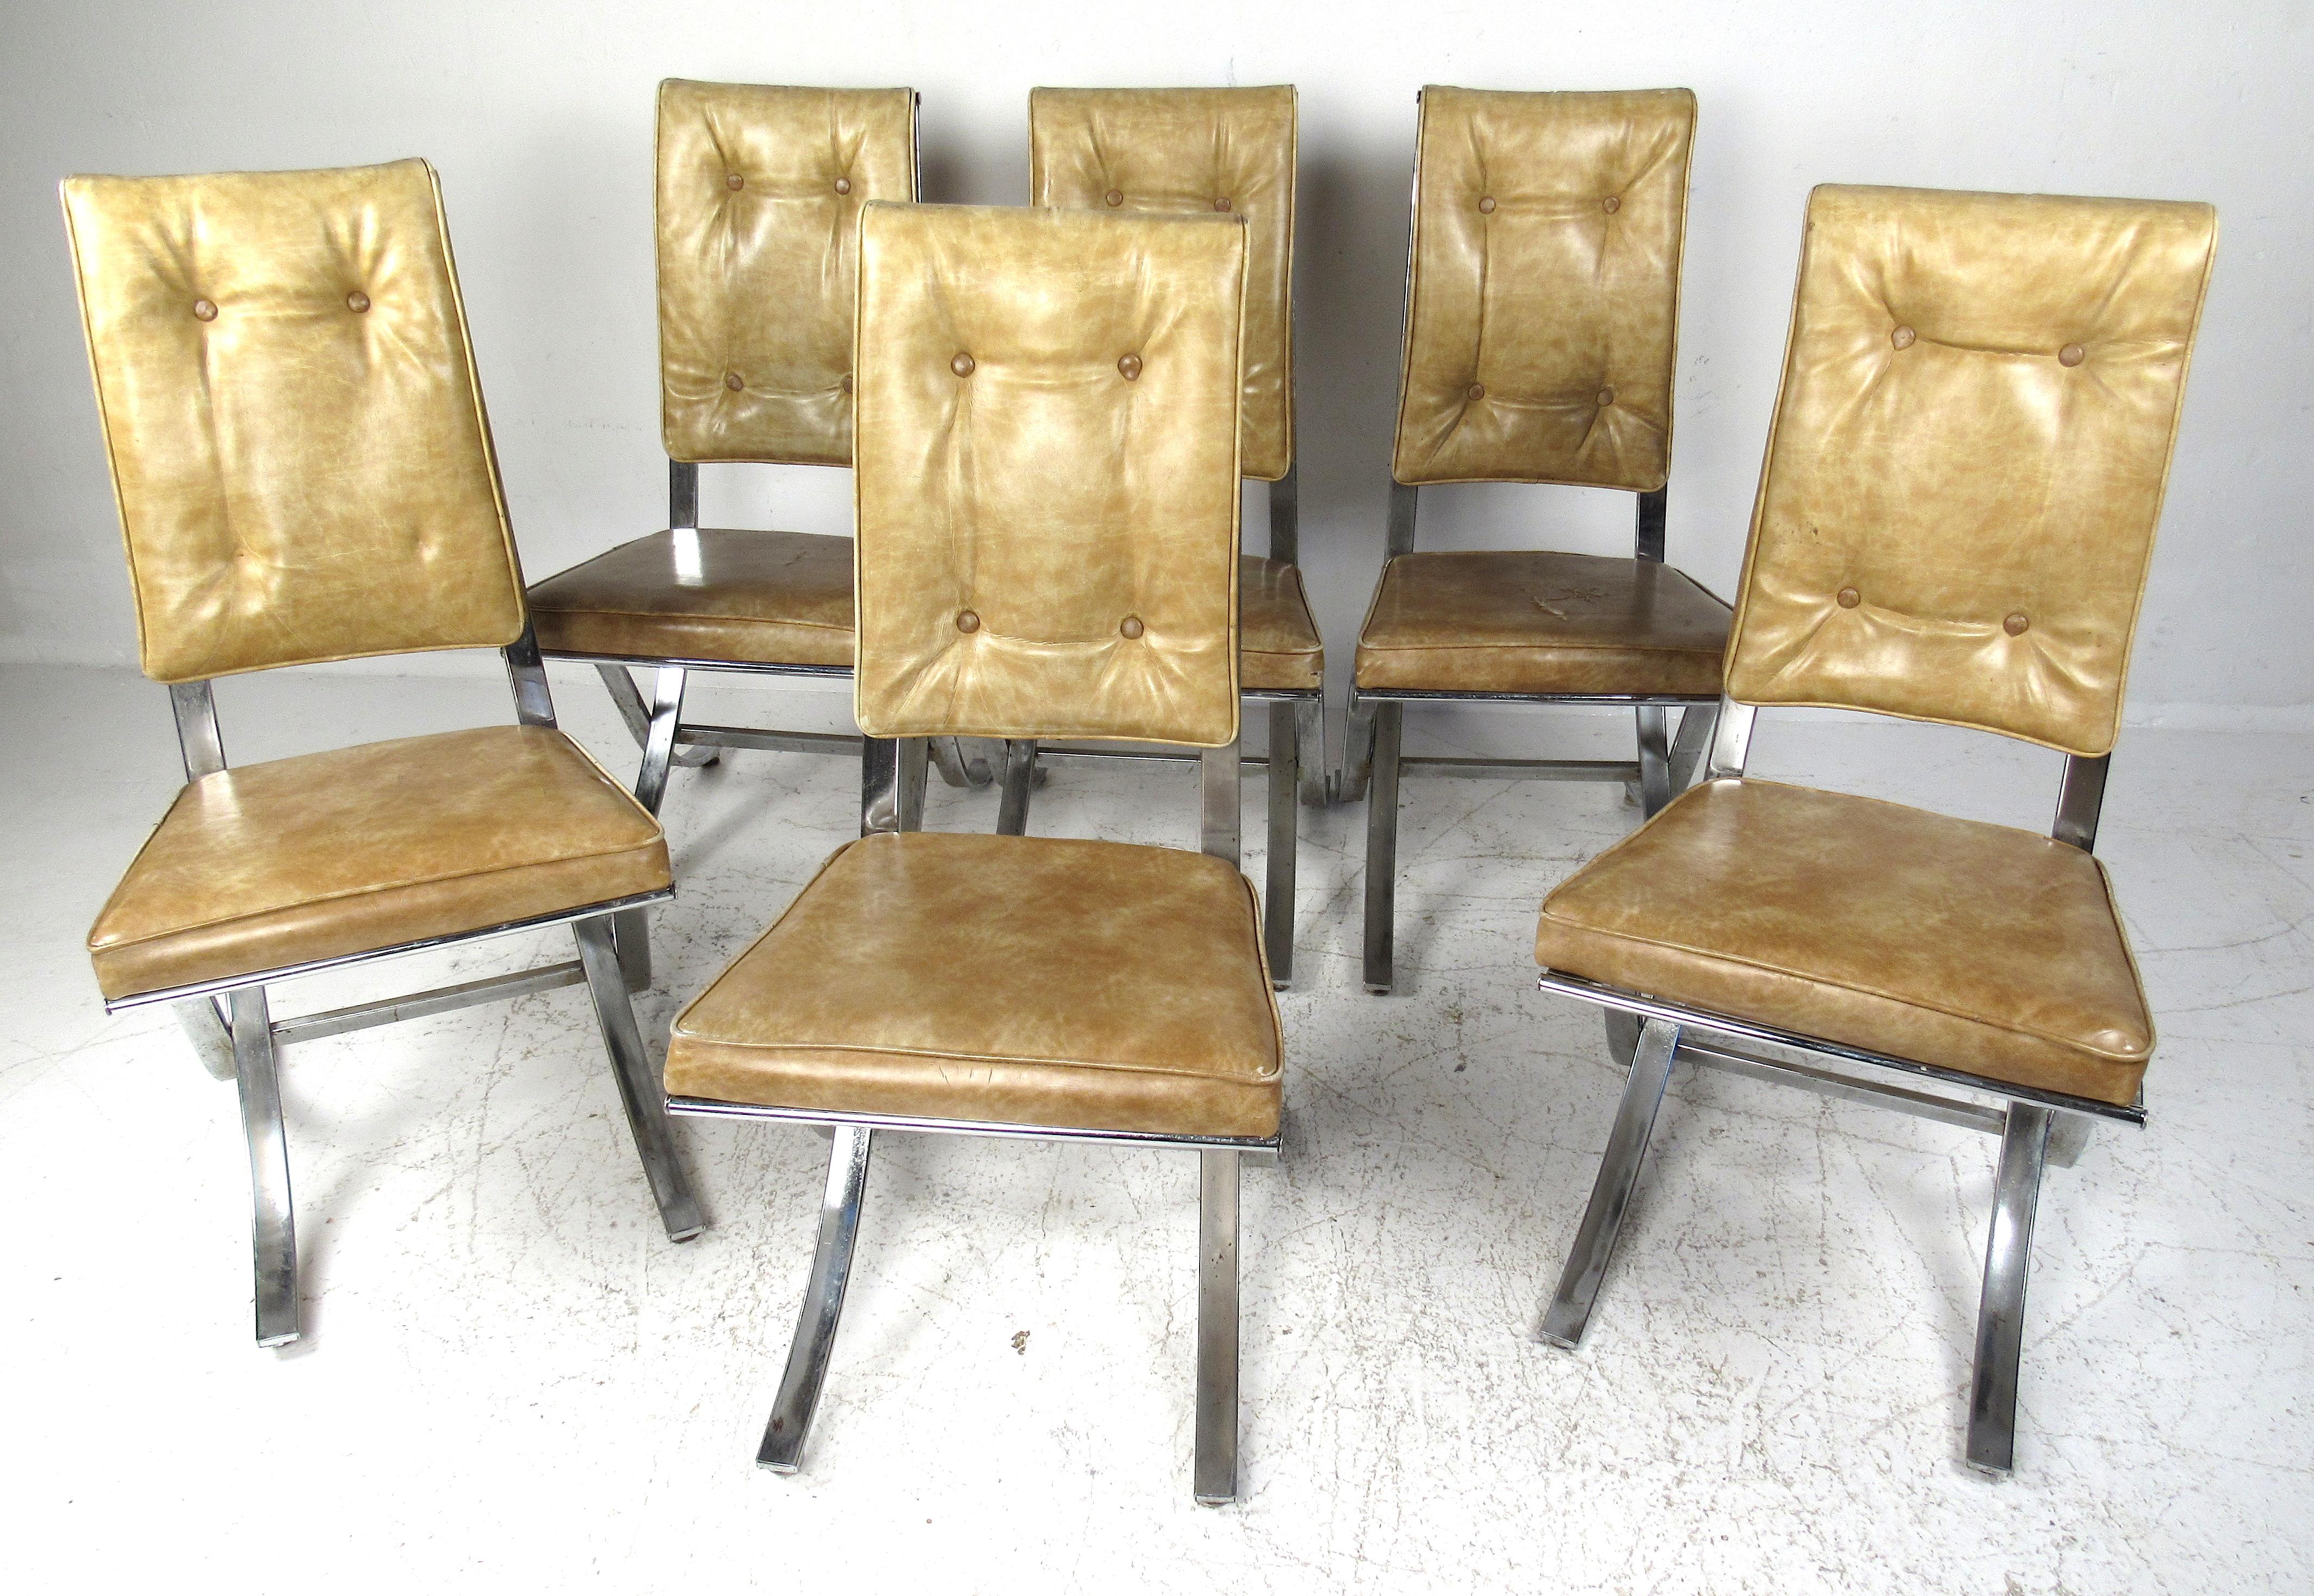 Ensemble de six chaises de salle à manger vintage en vinyle tufté et chrome par Contempo Company, basé à Brooklyn. Ensemble de dînette de style classique des années 1960, restauration nécessaire. Veuillez confirmer la localisation de l'article (NY